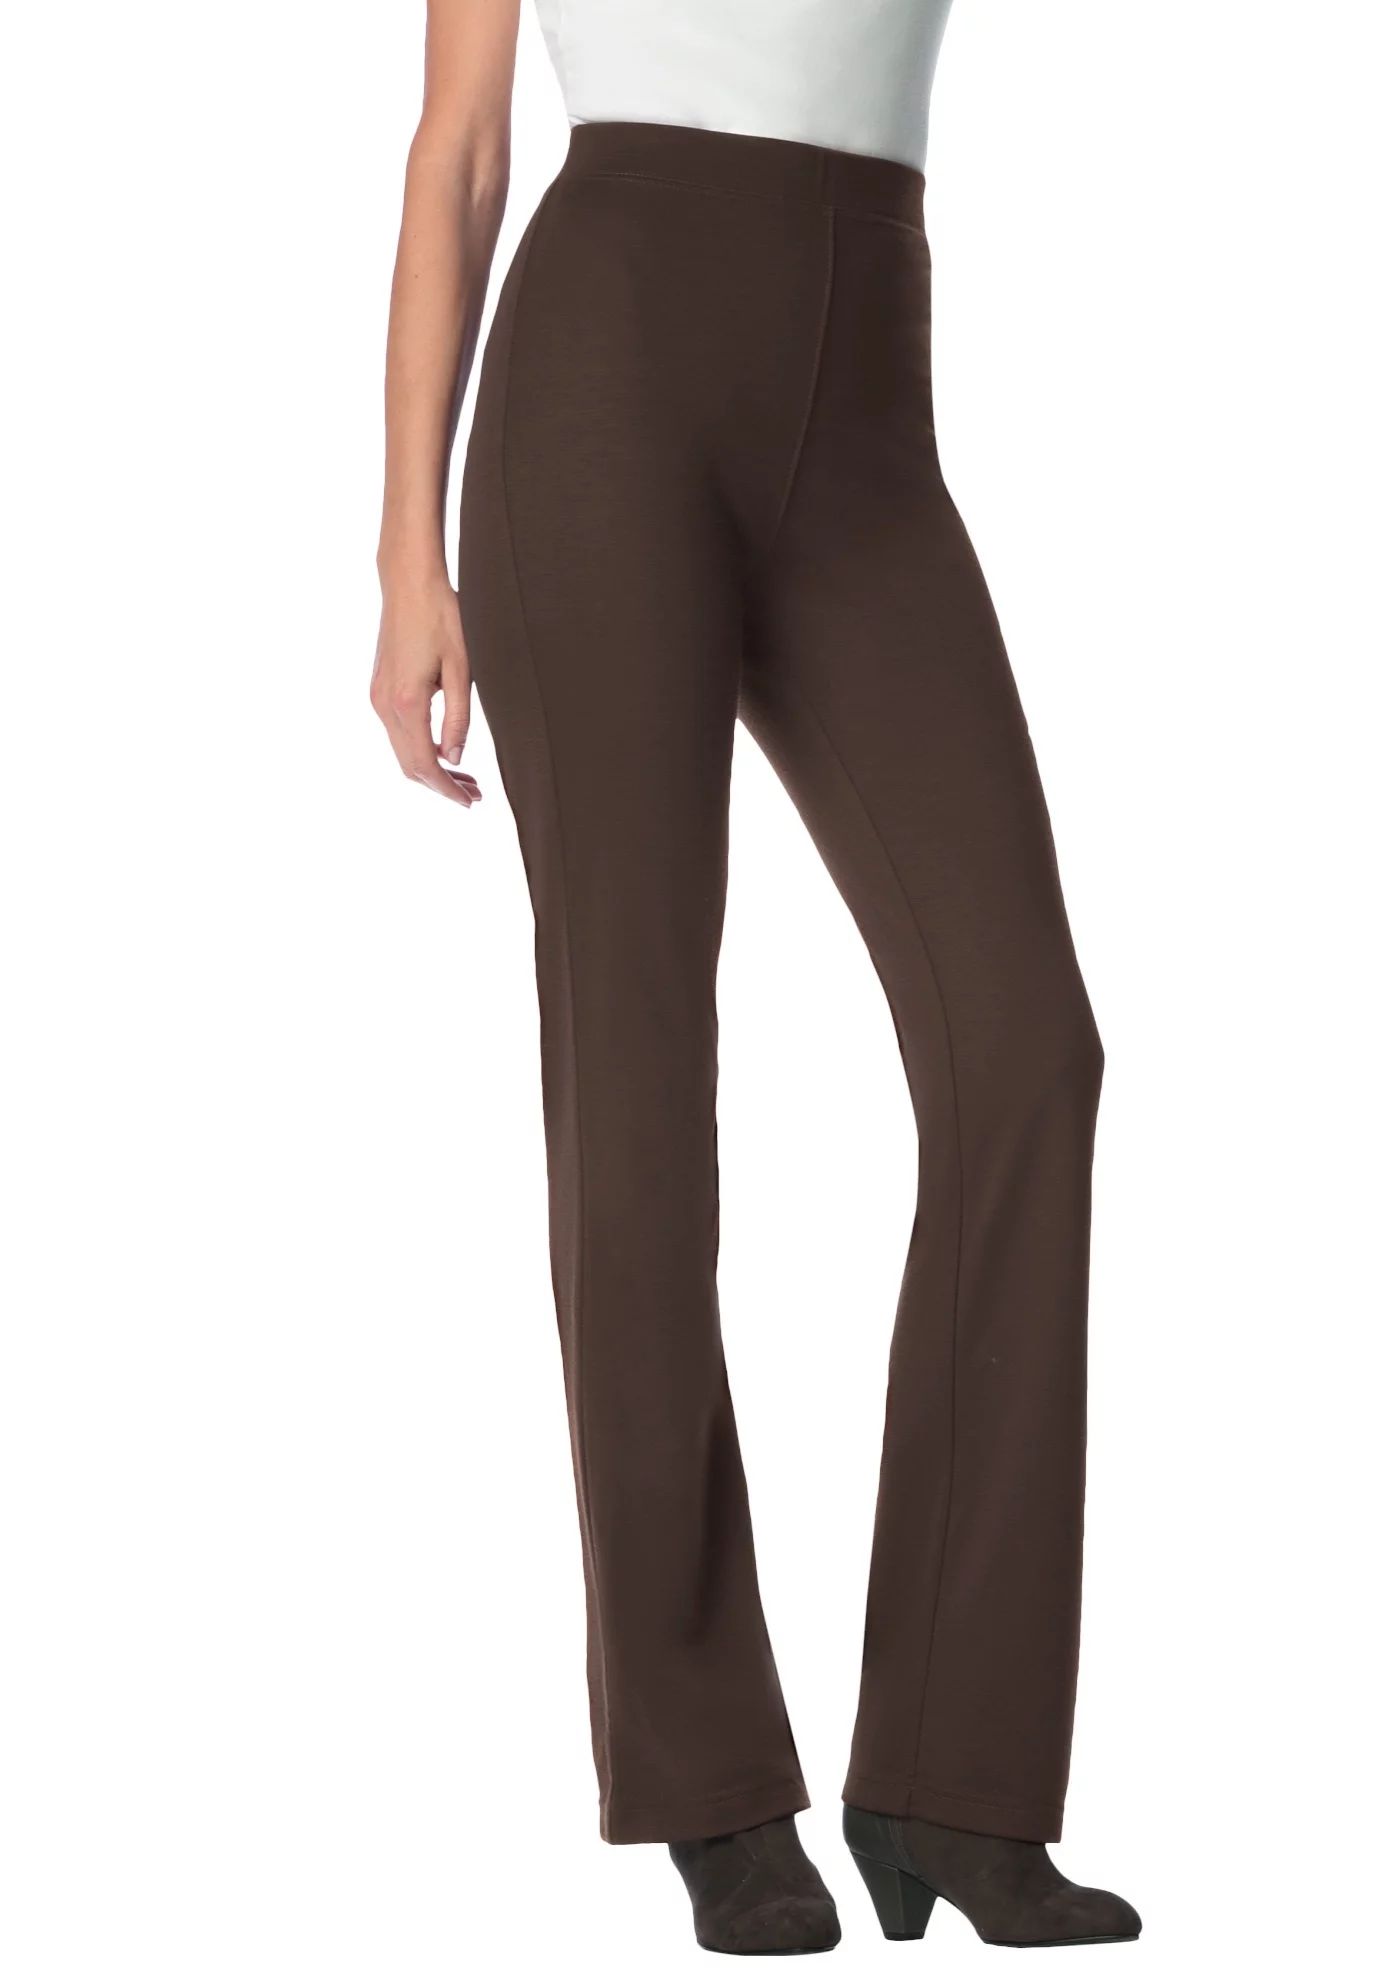 UDAXB Women's Plus Size Tall Bootcut Ponte Stretch Knit Pant Pant | Walmart (US)